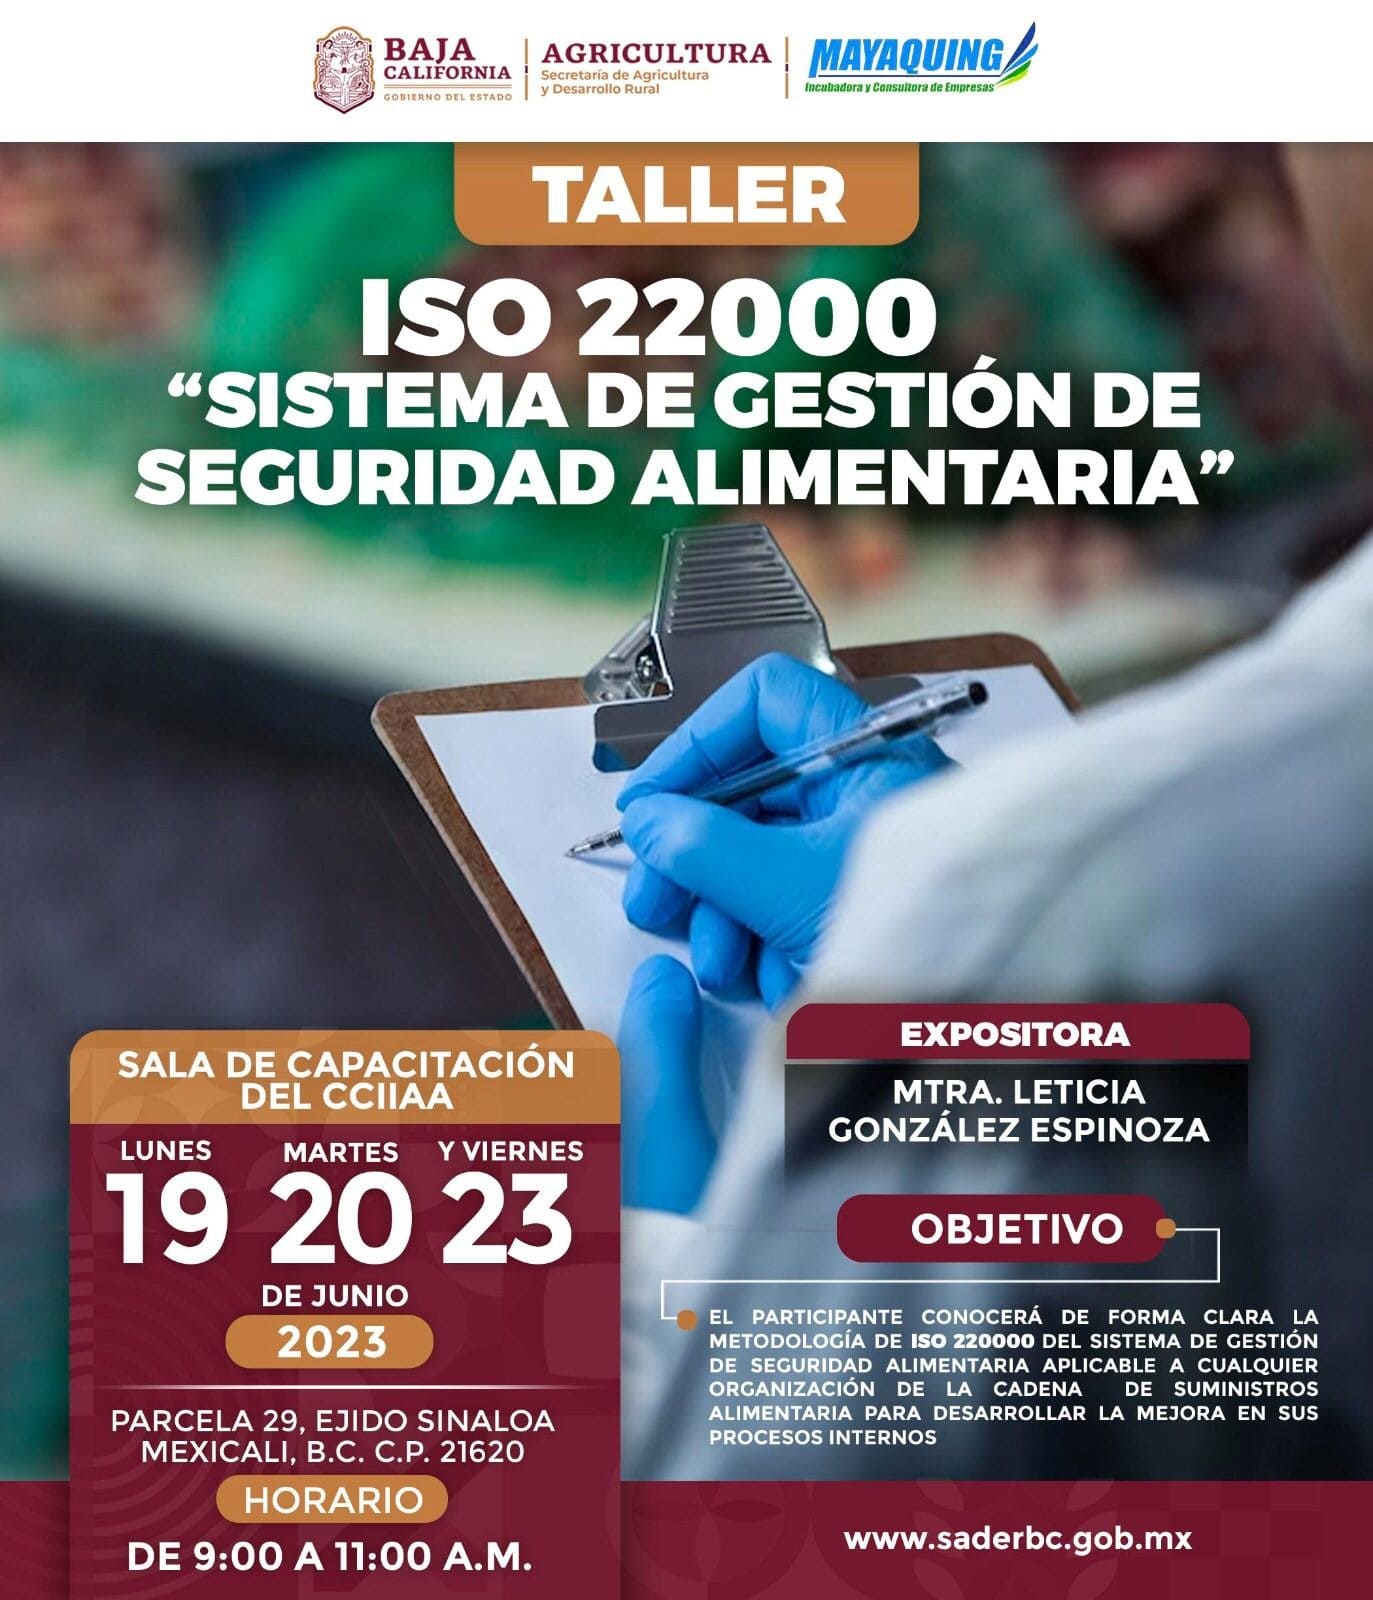 OFRECE SADERBC TALLER PARA LA APLICACIÓN DEL SISTEMA DE GESTIÓN DE SEGURIDAD ALIMENTARIA ISO 22000